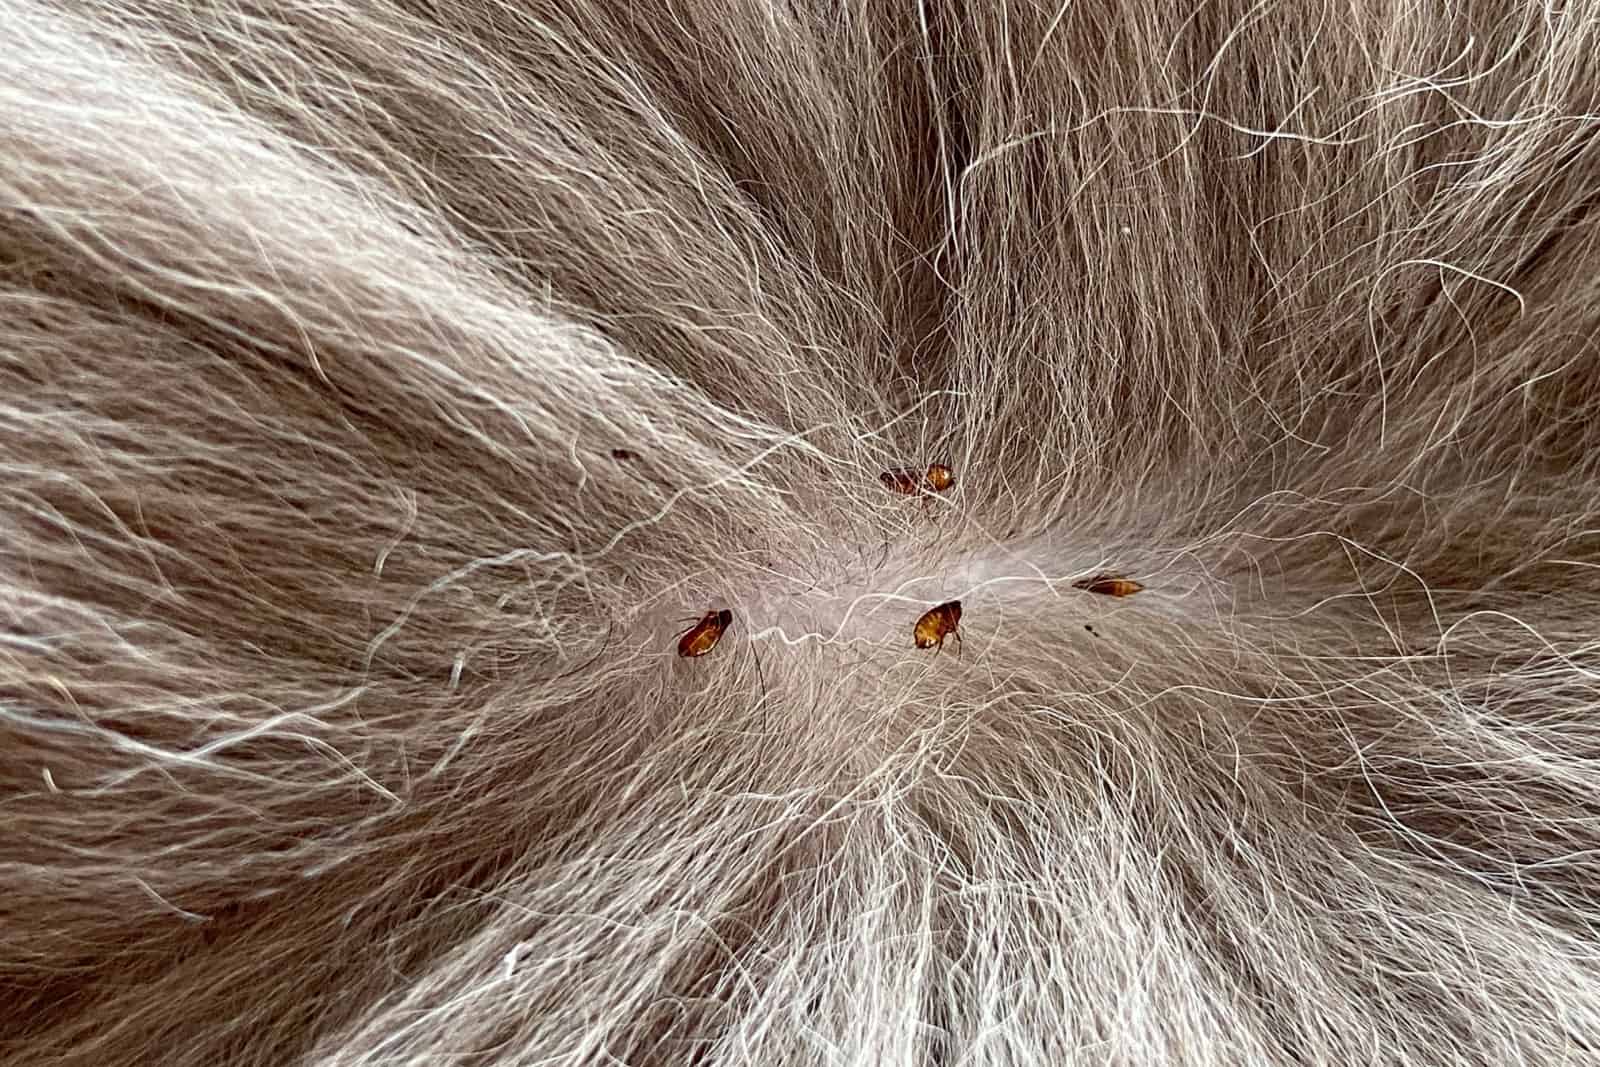 Fleas sucking on cat skin